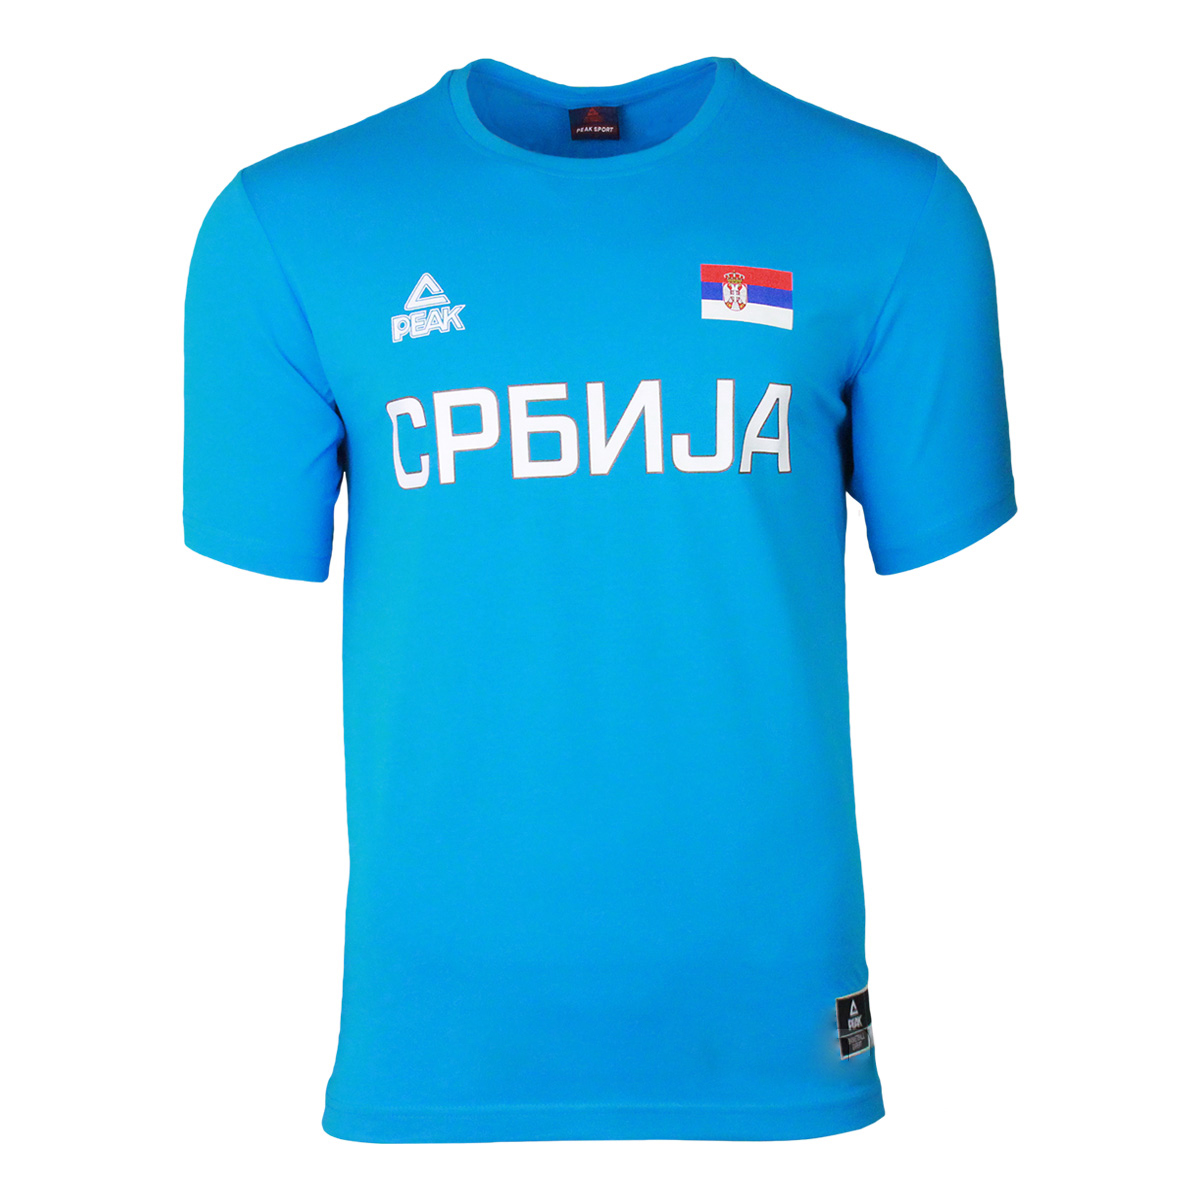 Peak majica košarkaške reprezentacije Srbije - plava